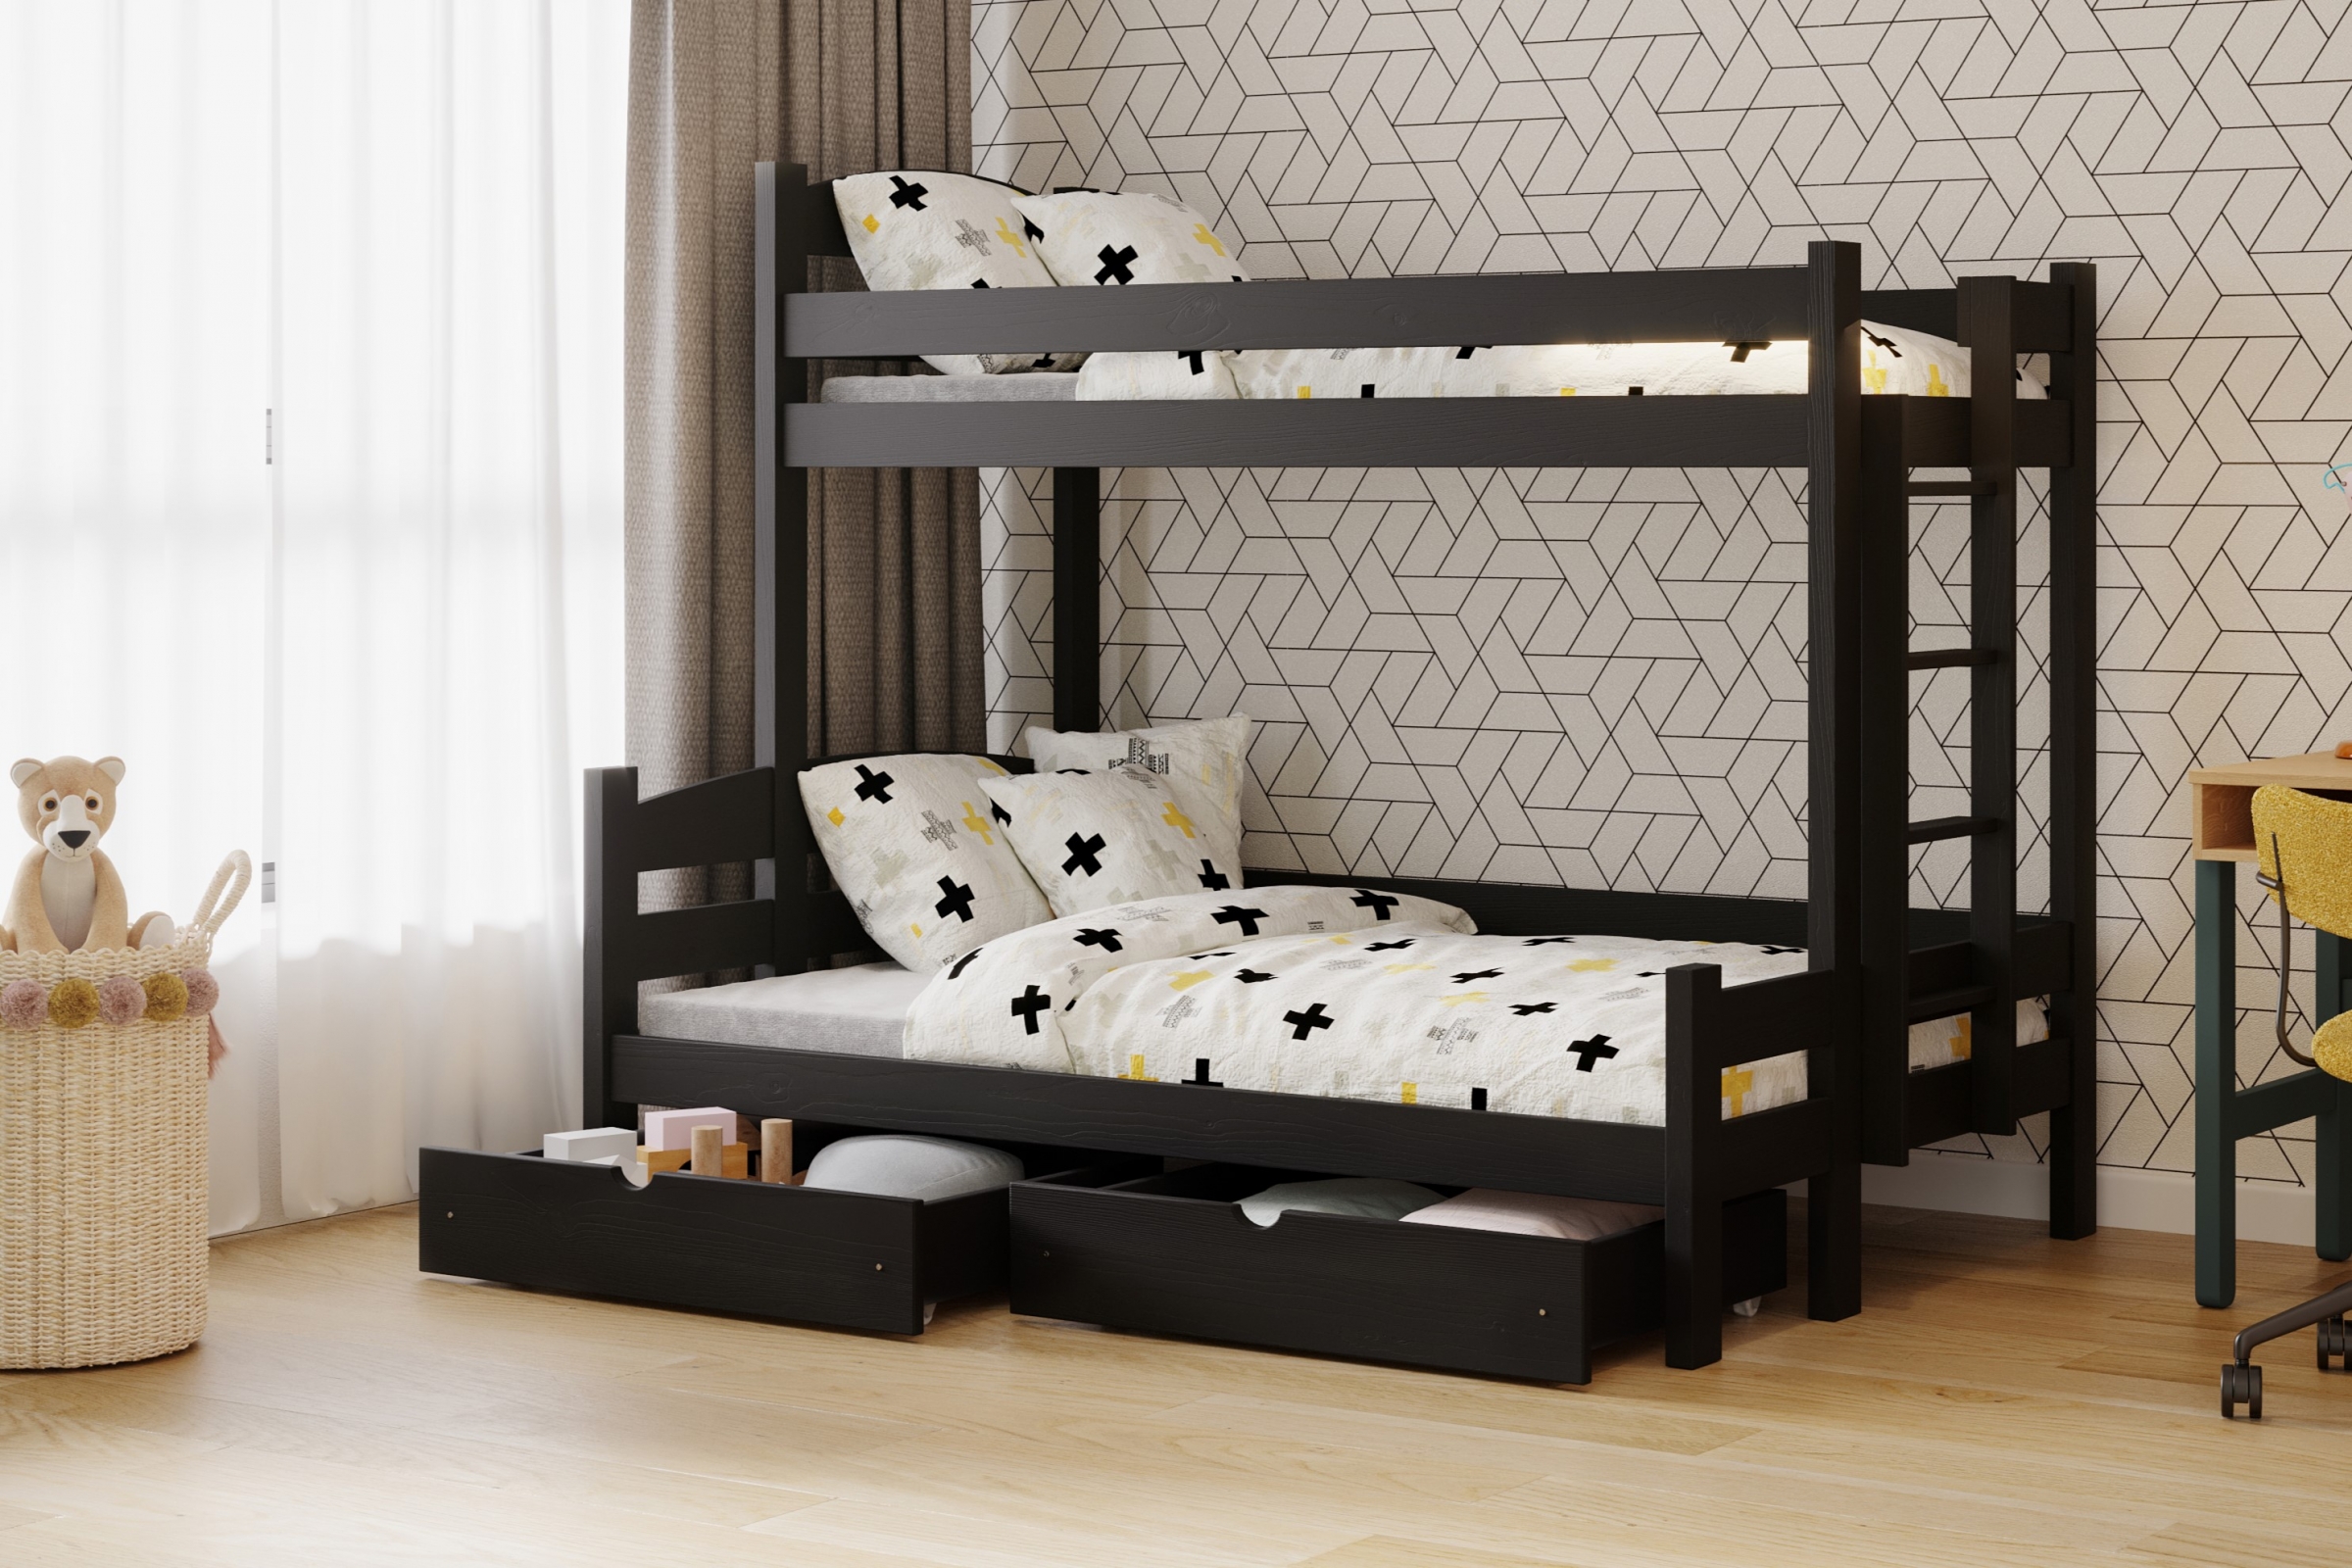 Lovic emeletes ágy, fiókokkal, bal oldali - 80x200 cm/140x200 cm - fekete Emeletes ágy fiokokkal Lovic - fekete - aranzacja